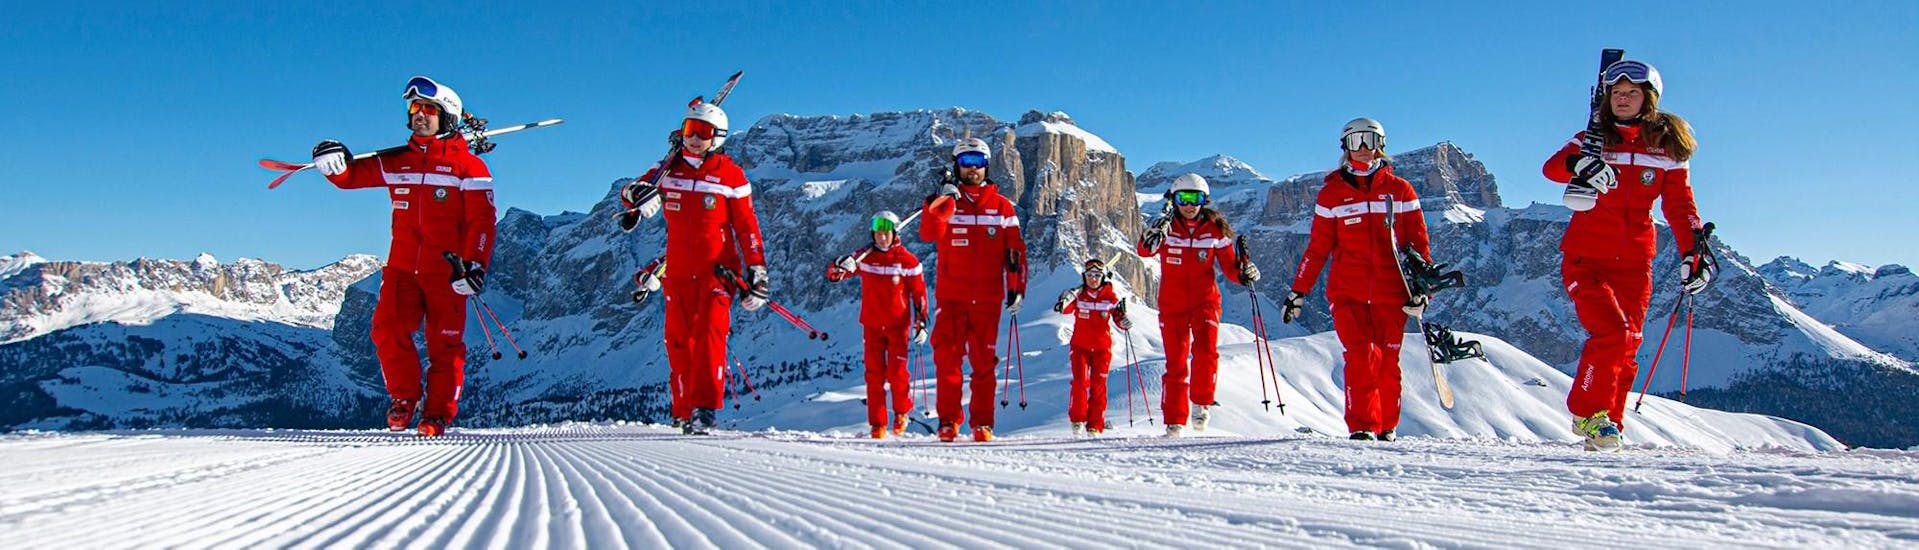 Maestri di sci pronti per un'altra giornata di divertimento sulle piste della Val Gardena.